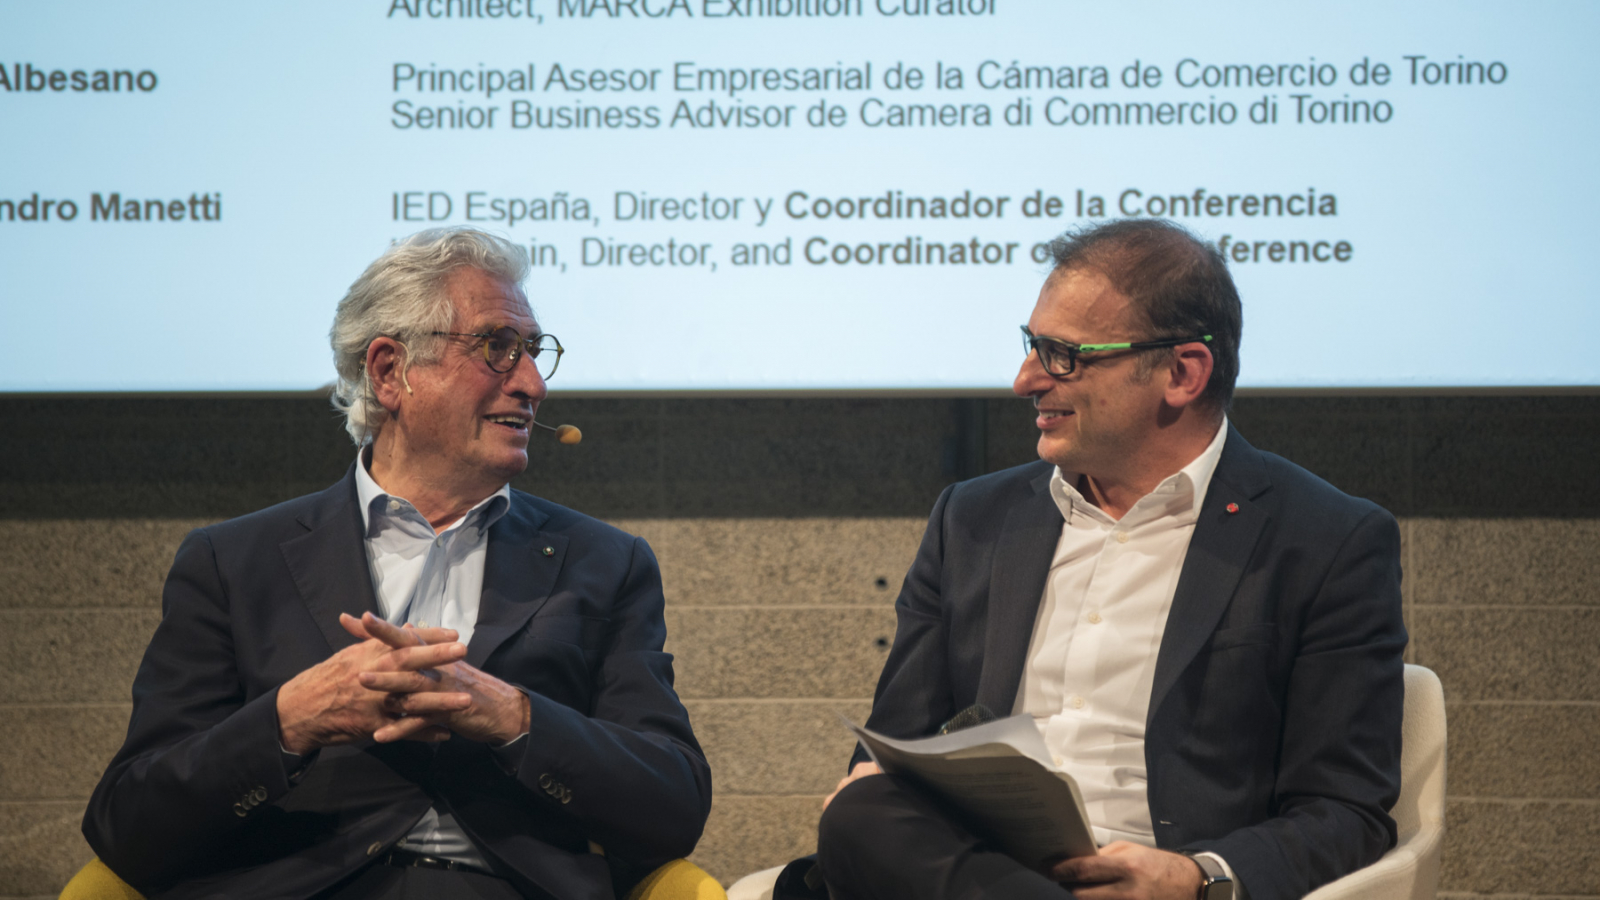 Alessandro Manetti, Director del IED España, en el MadridDesignPRO